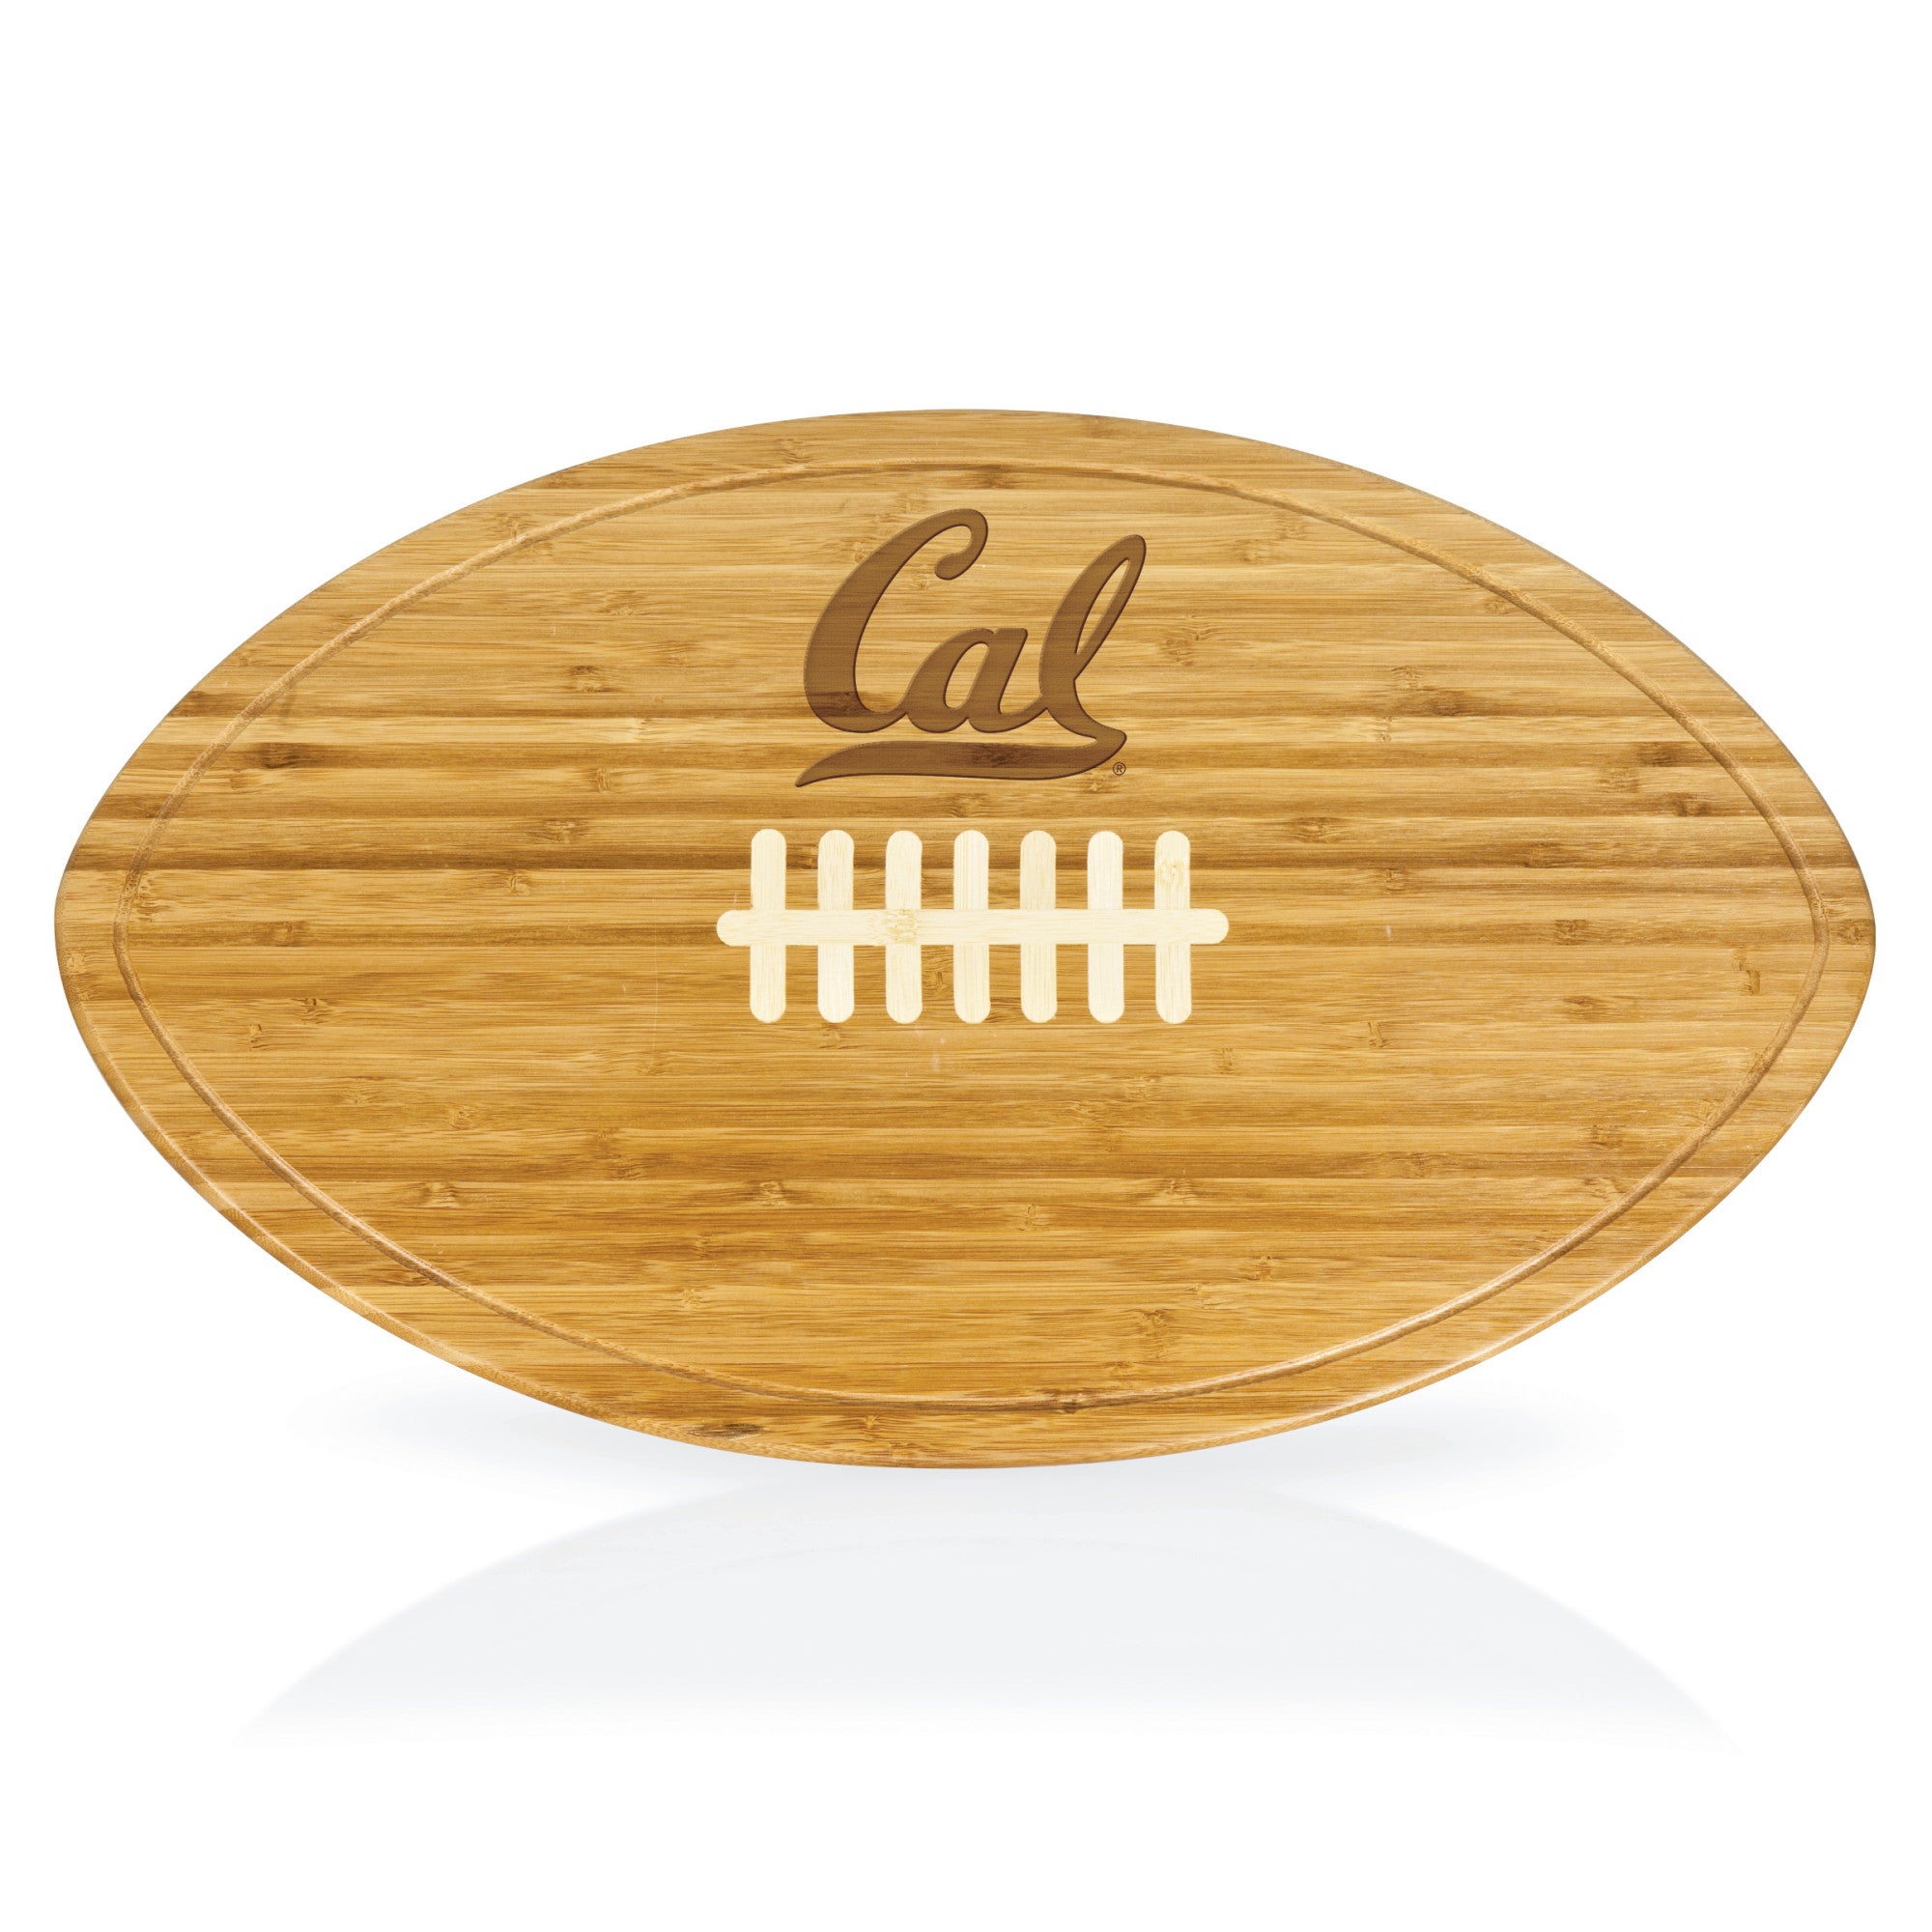 Cal Bears - Kickoff Football Cutting Board & Serving Tray